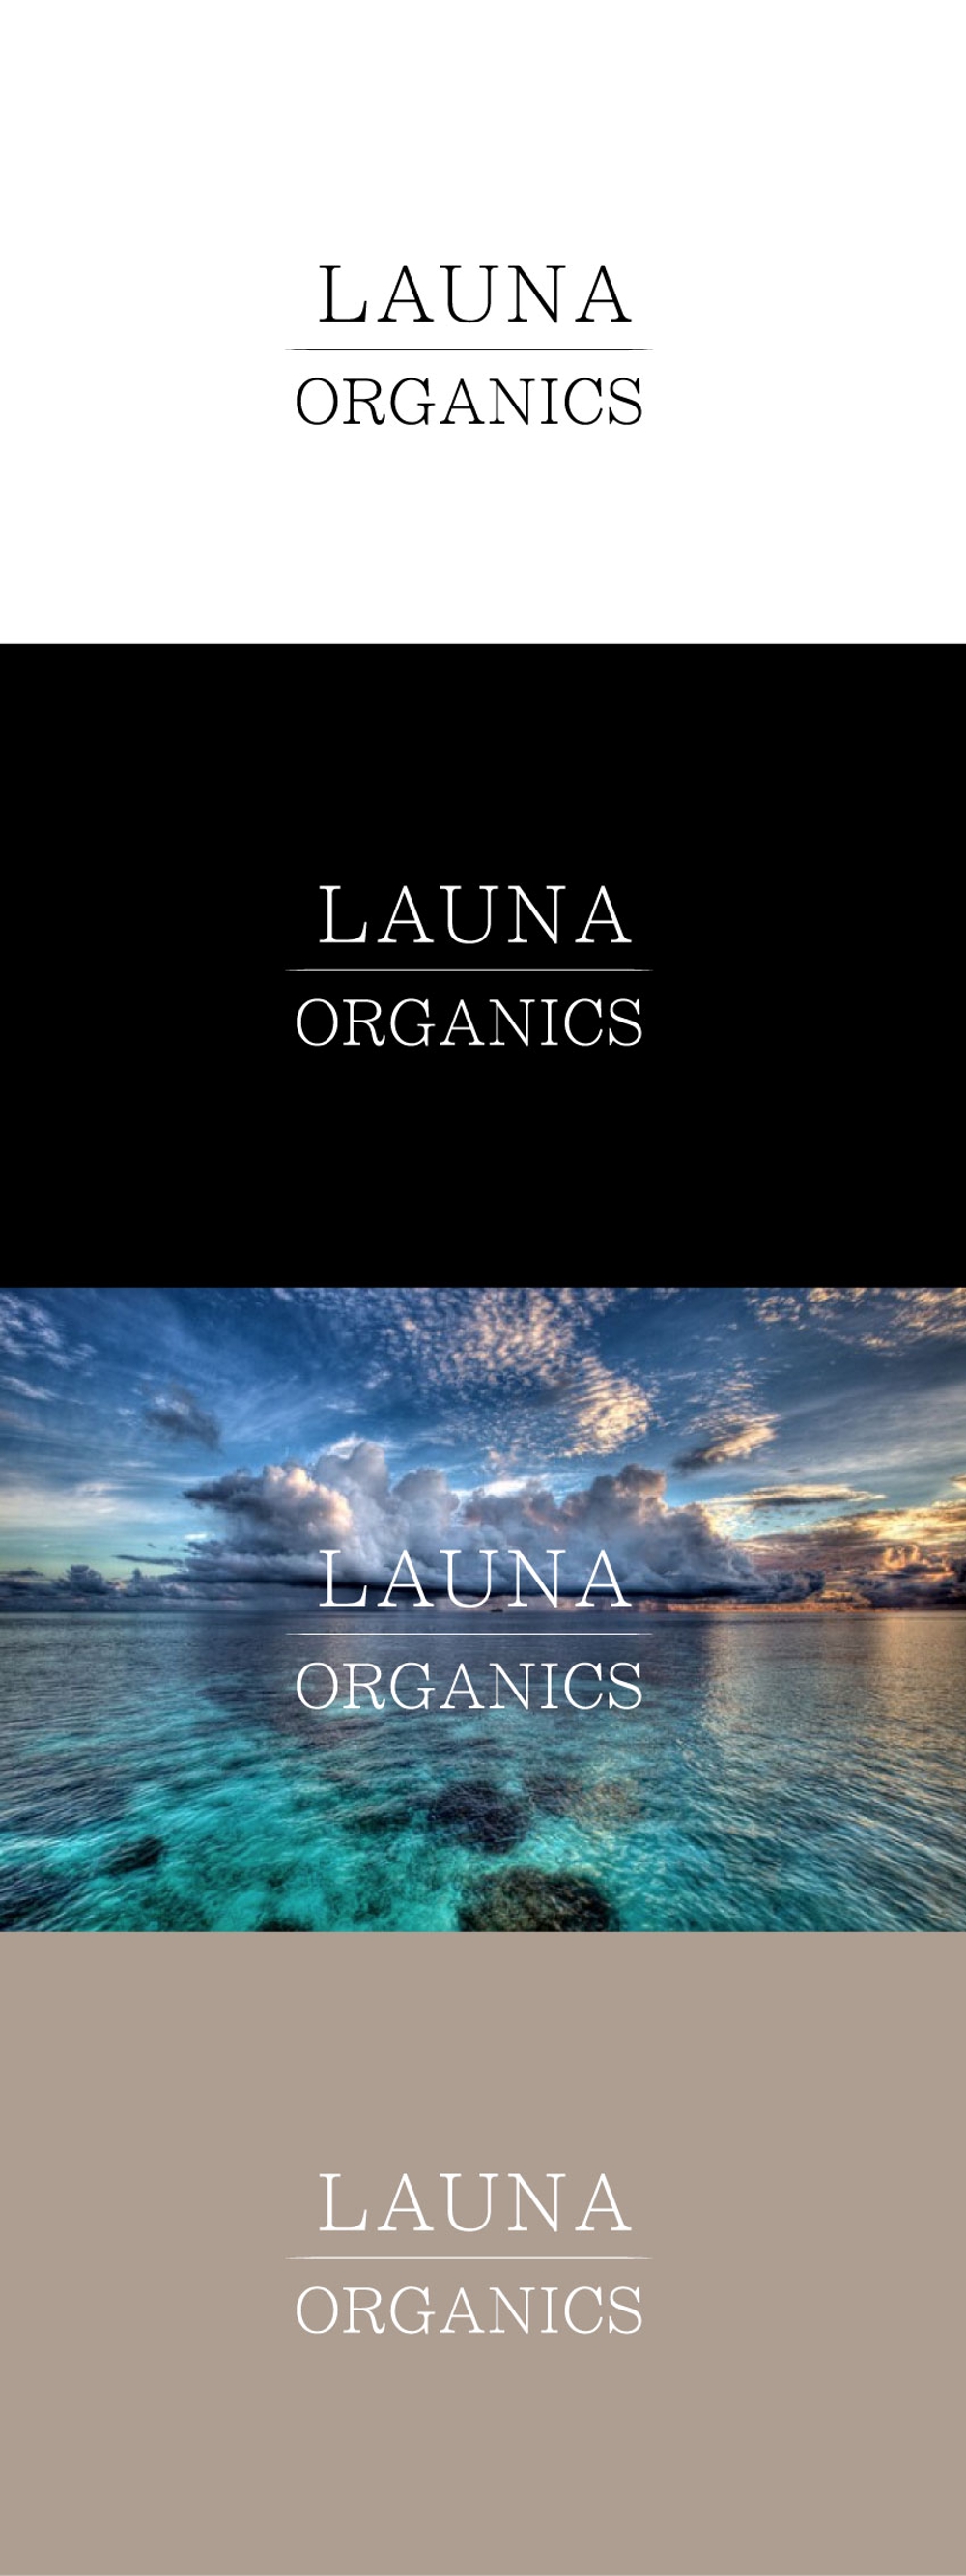 オーガニック化粧品「LAUNA ORGANICS」のロゴ制作